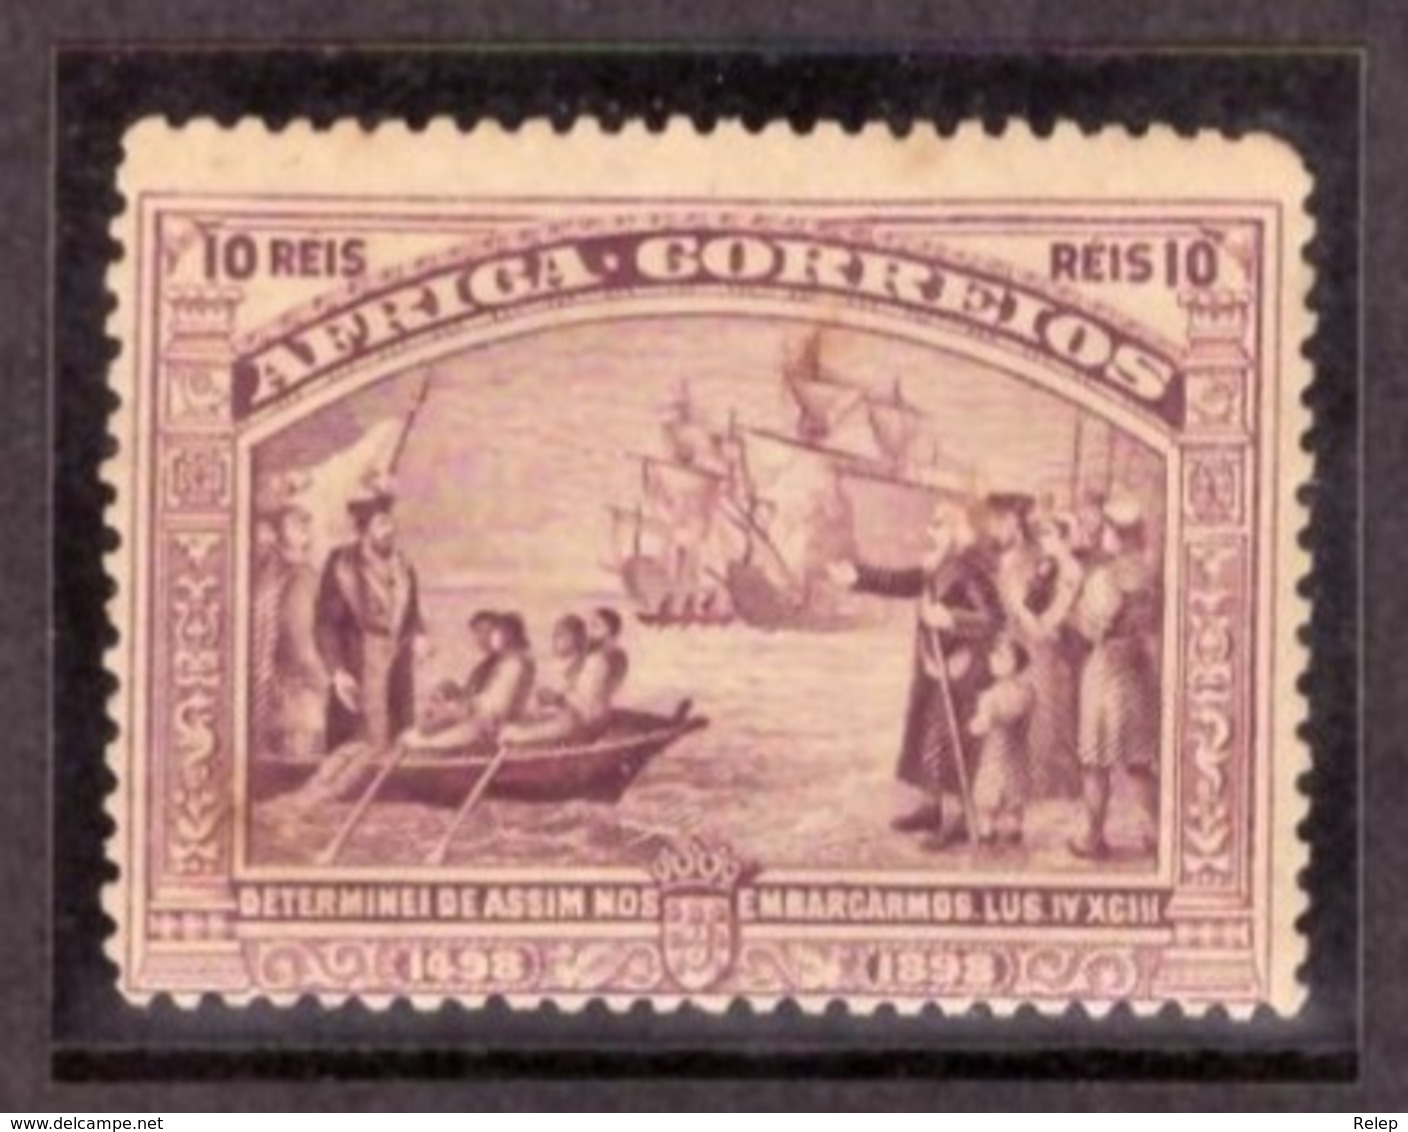 Africa Portuguesa  1898 - IV Cent Descoberta Do Caminho Marítimo Para A India N° 3 / 10Rs - Ver Scan - - Portugiesisch-Afrika